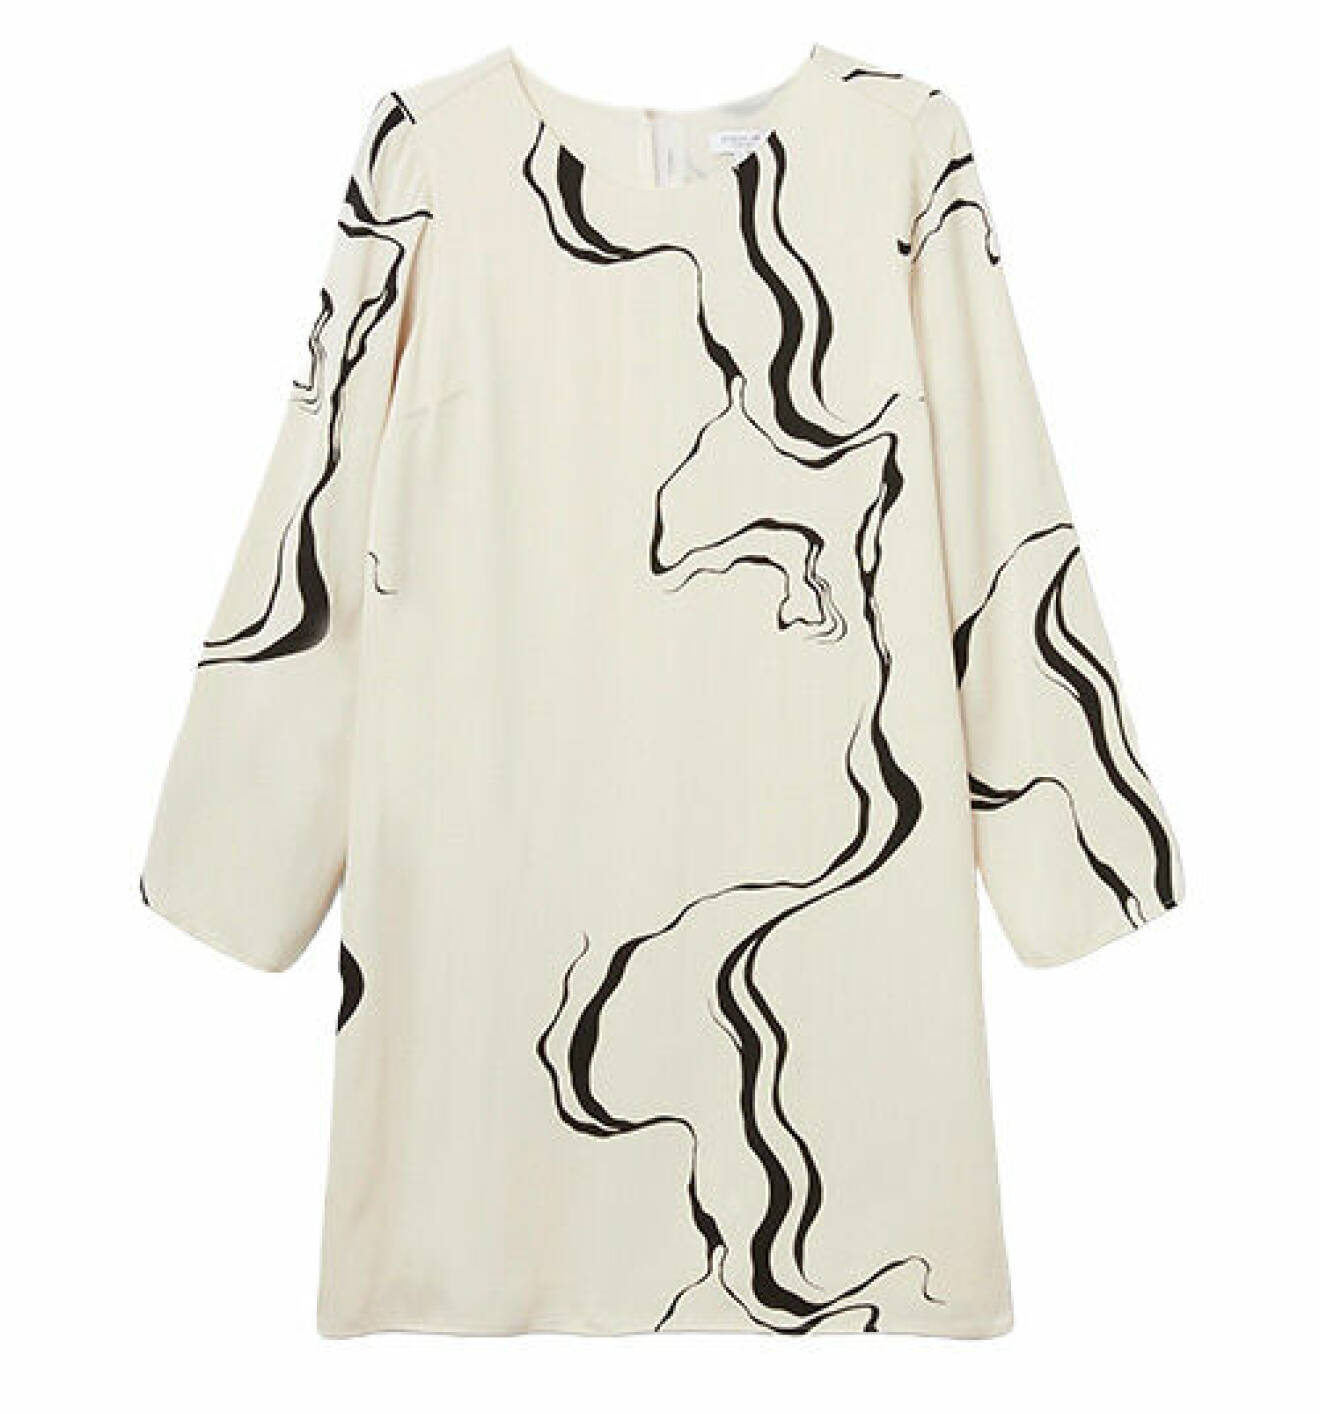 Svartvit klänning med mönster från Stockhlm Studio/MQ Marqet